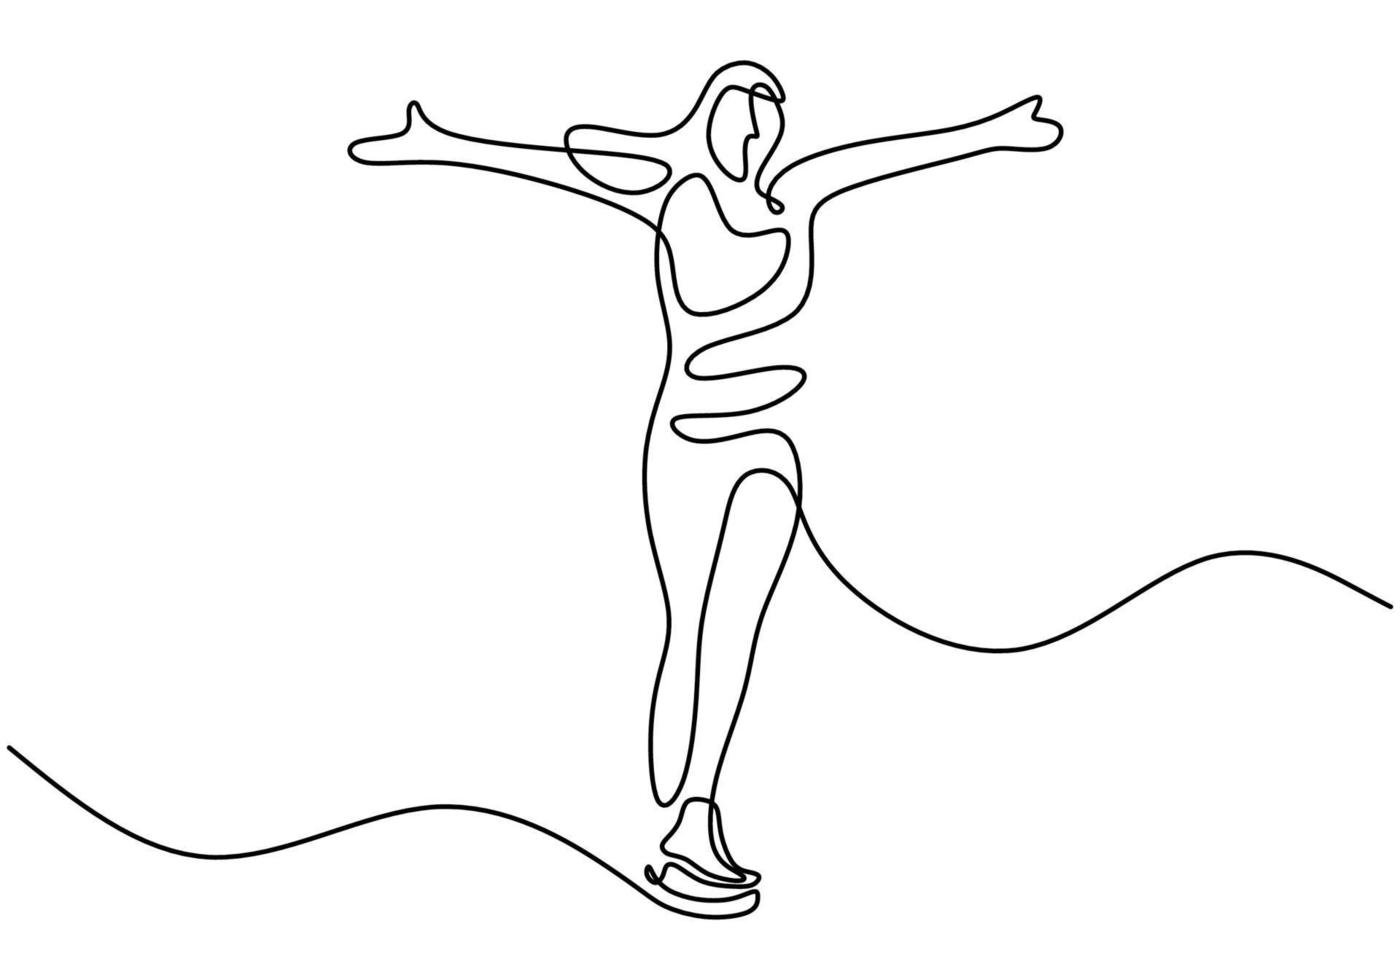 kontinuerlig linjeteckning av ung flicka som leker skridskoåkning i isområdet isolerad på vit bakgrund. konståkning flicka handritad lineart minimalism design. vektor vinter aktivitet illustration